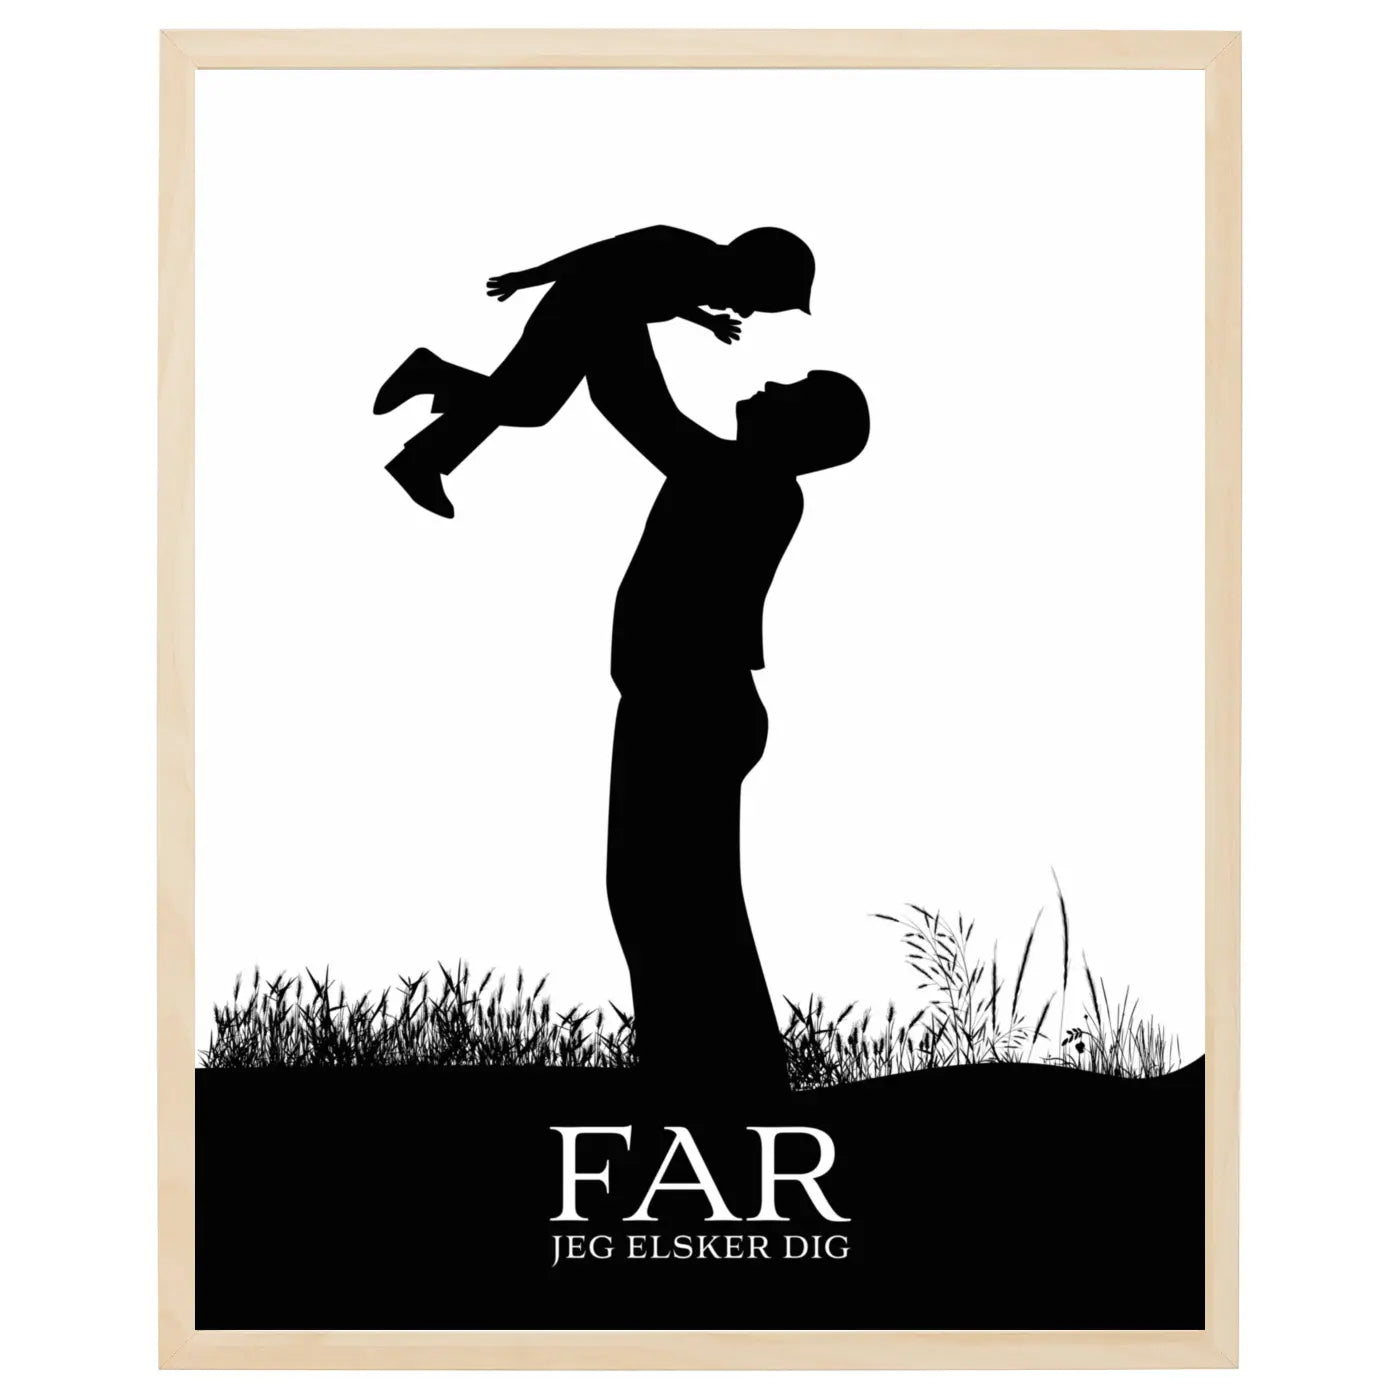 Far plakat - Jeg elsker dig tekst med billedet af en far der løfter sit barn